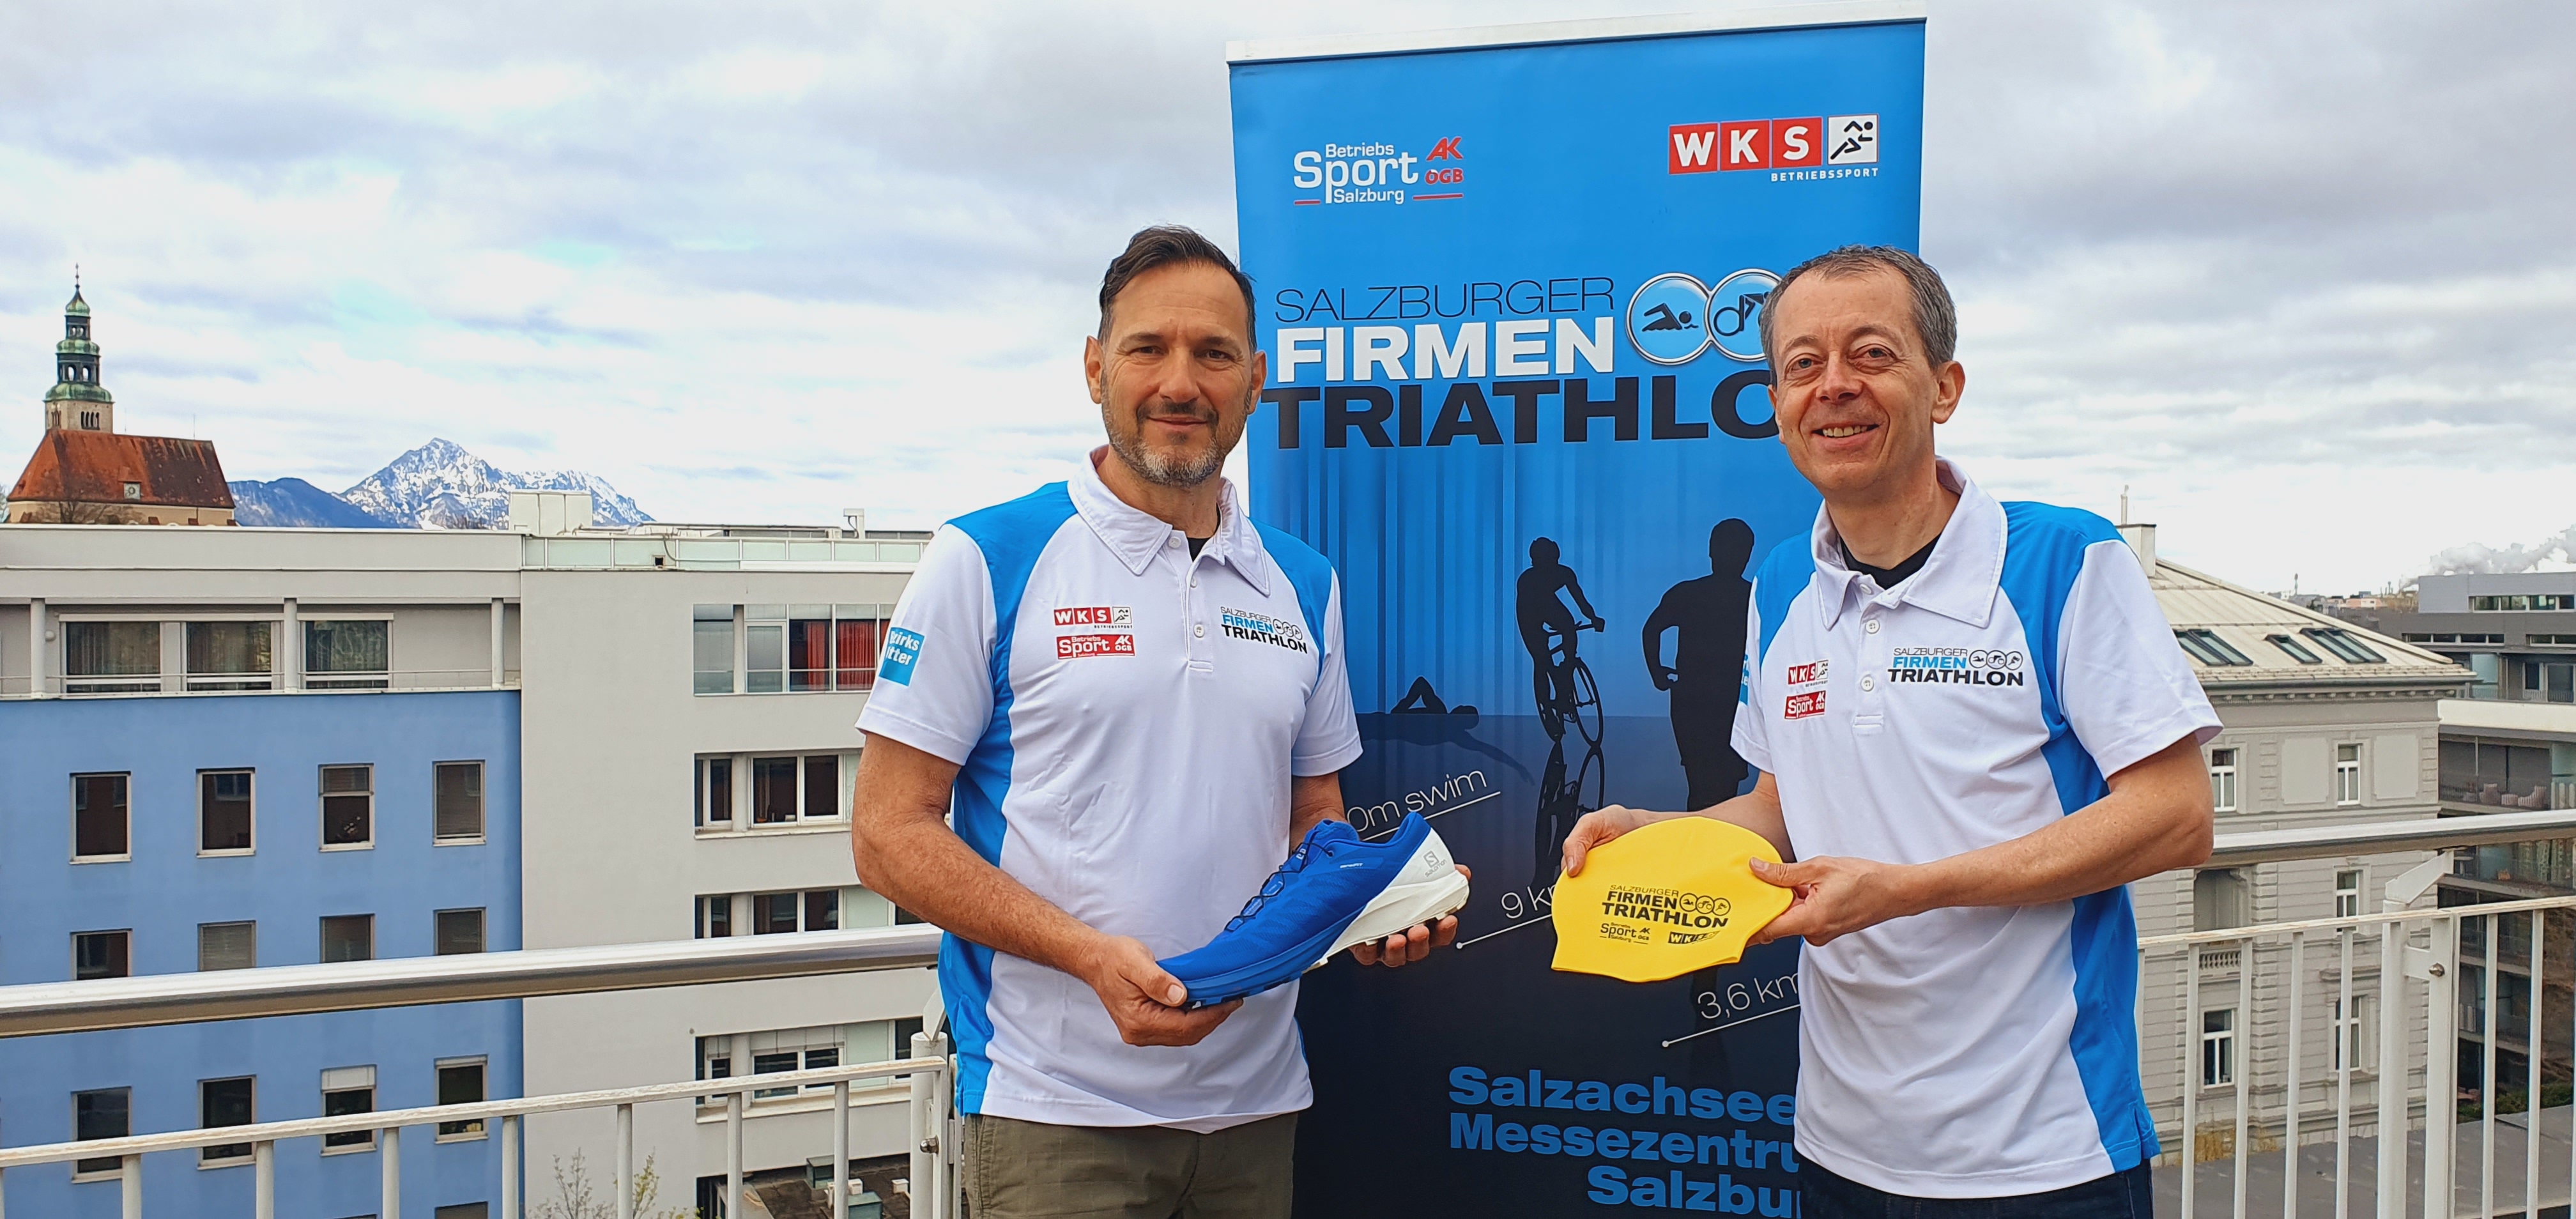 Salzburger Firmen Triathlon - die Veranstalter von AK und WK Salzburg Betriebssport